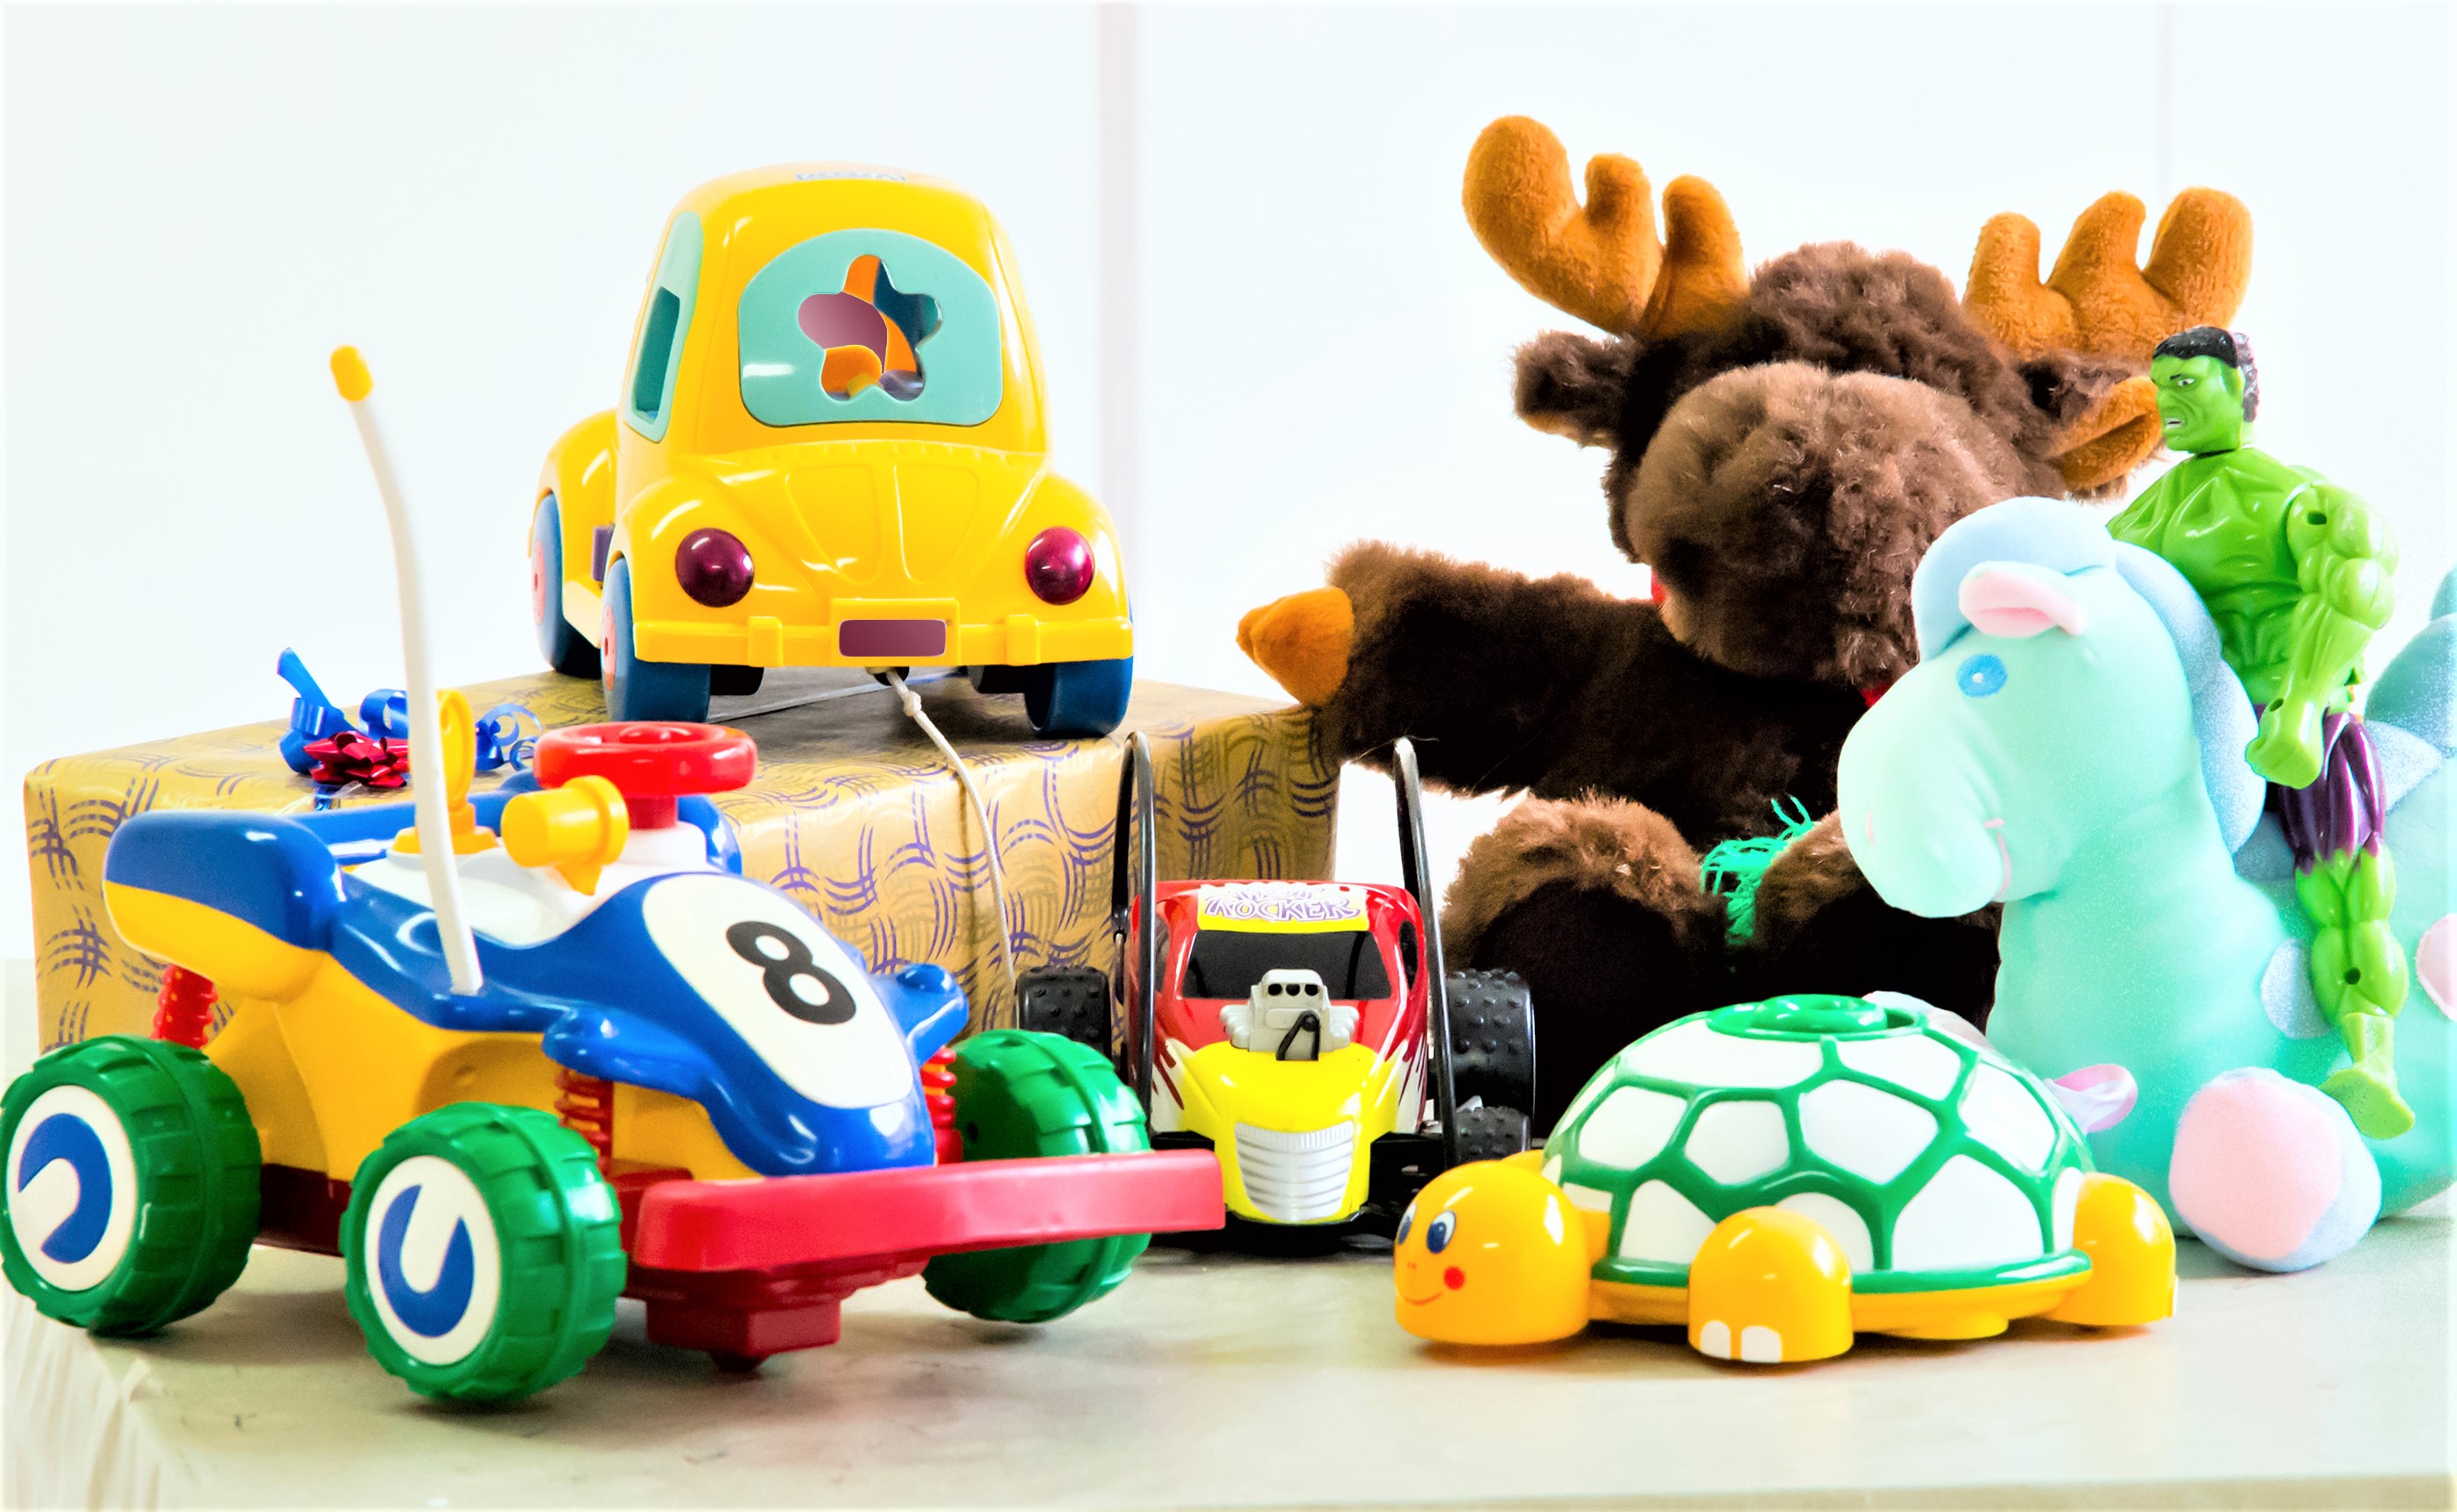 Recomiendan no adquirir juguetes que representen riesgos a la salud de los niños. Foto: Internet.